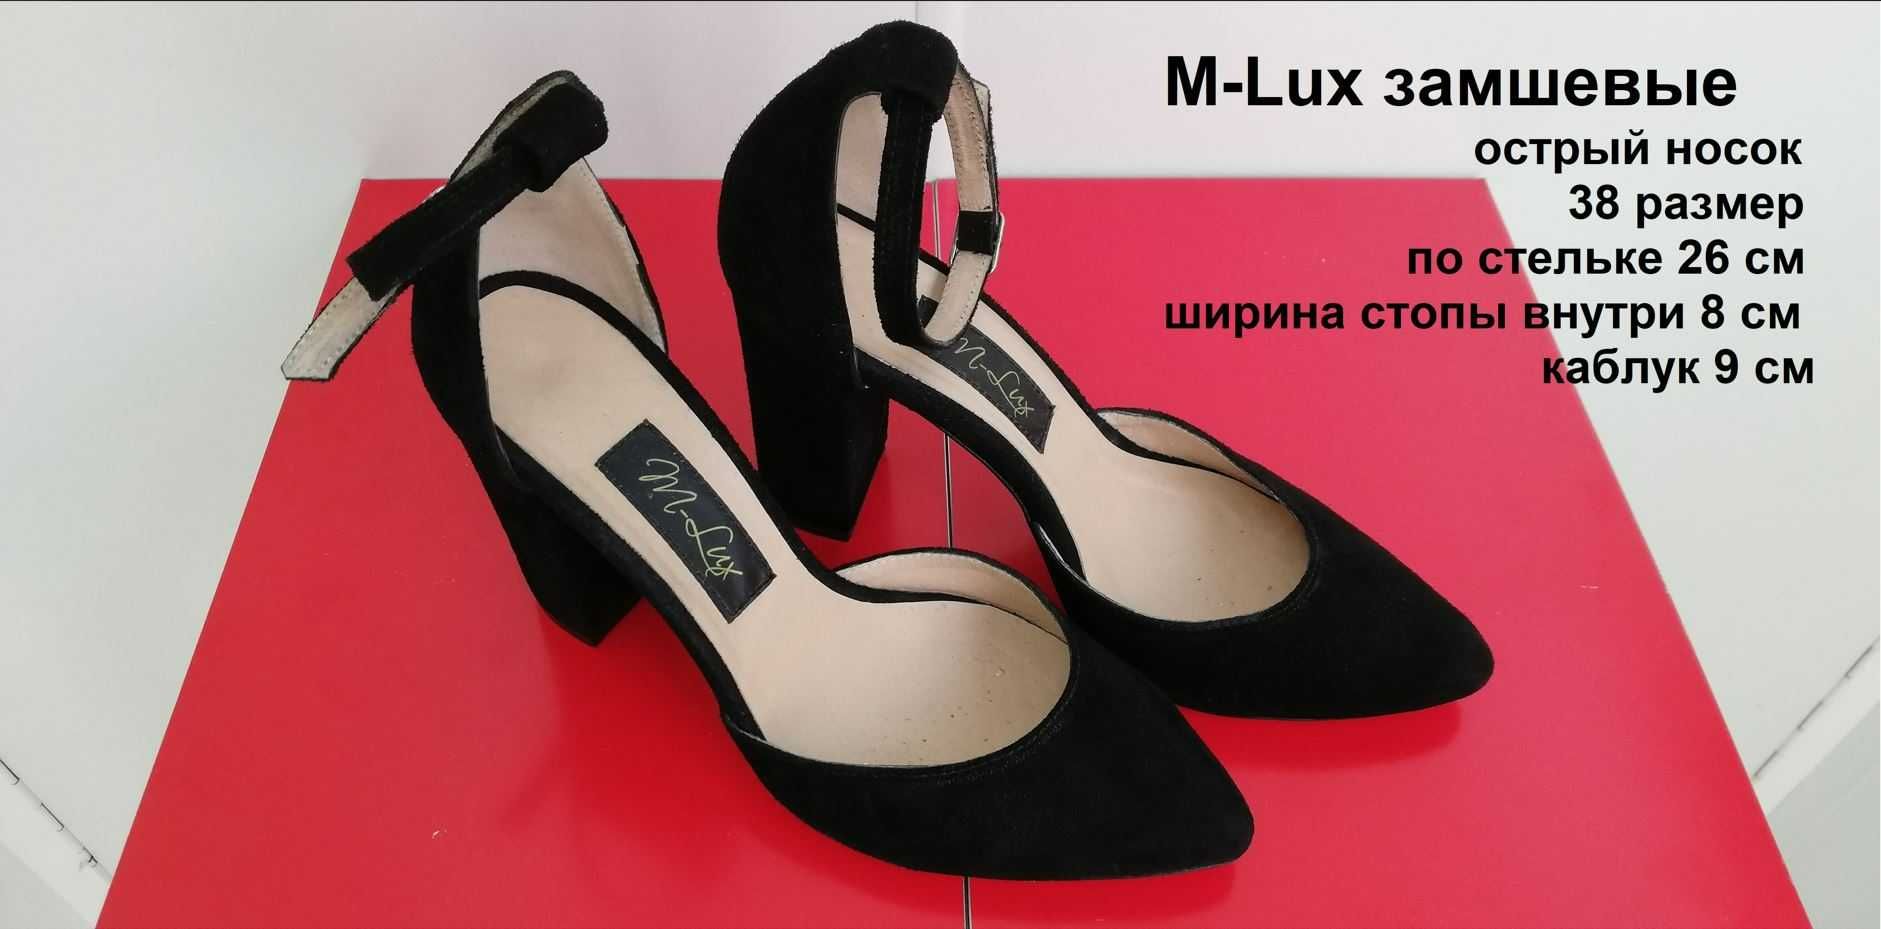 Туфли замшевые М Lux женские 38 размер каблук 9 см носок острый